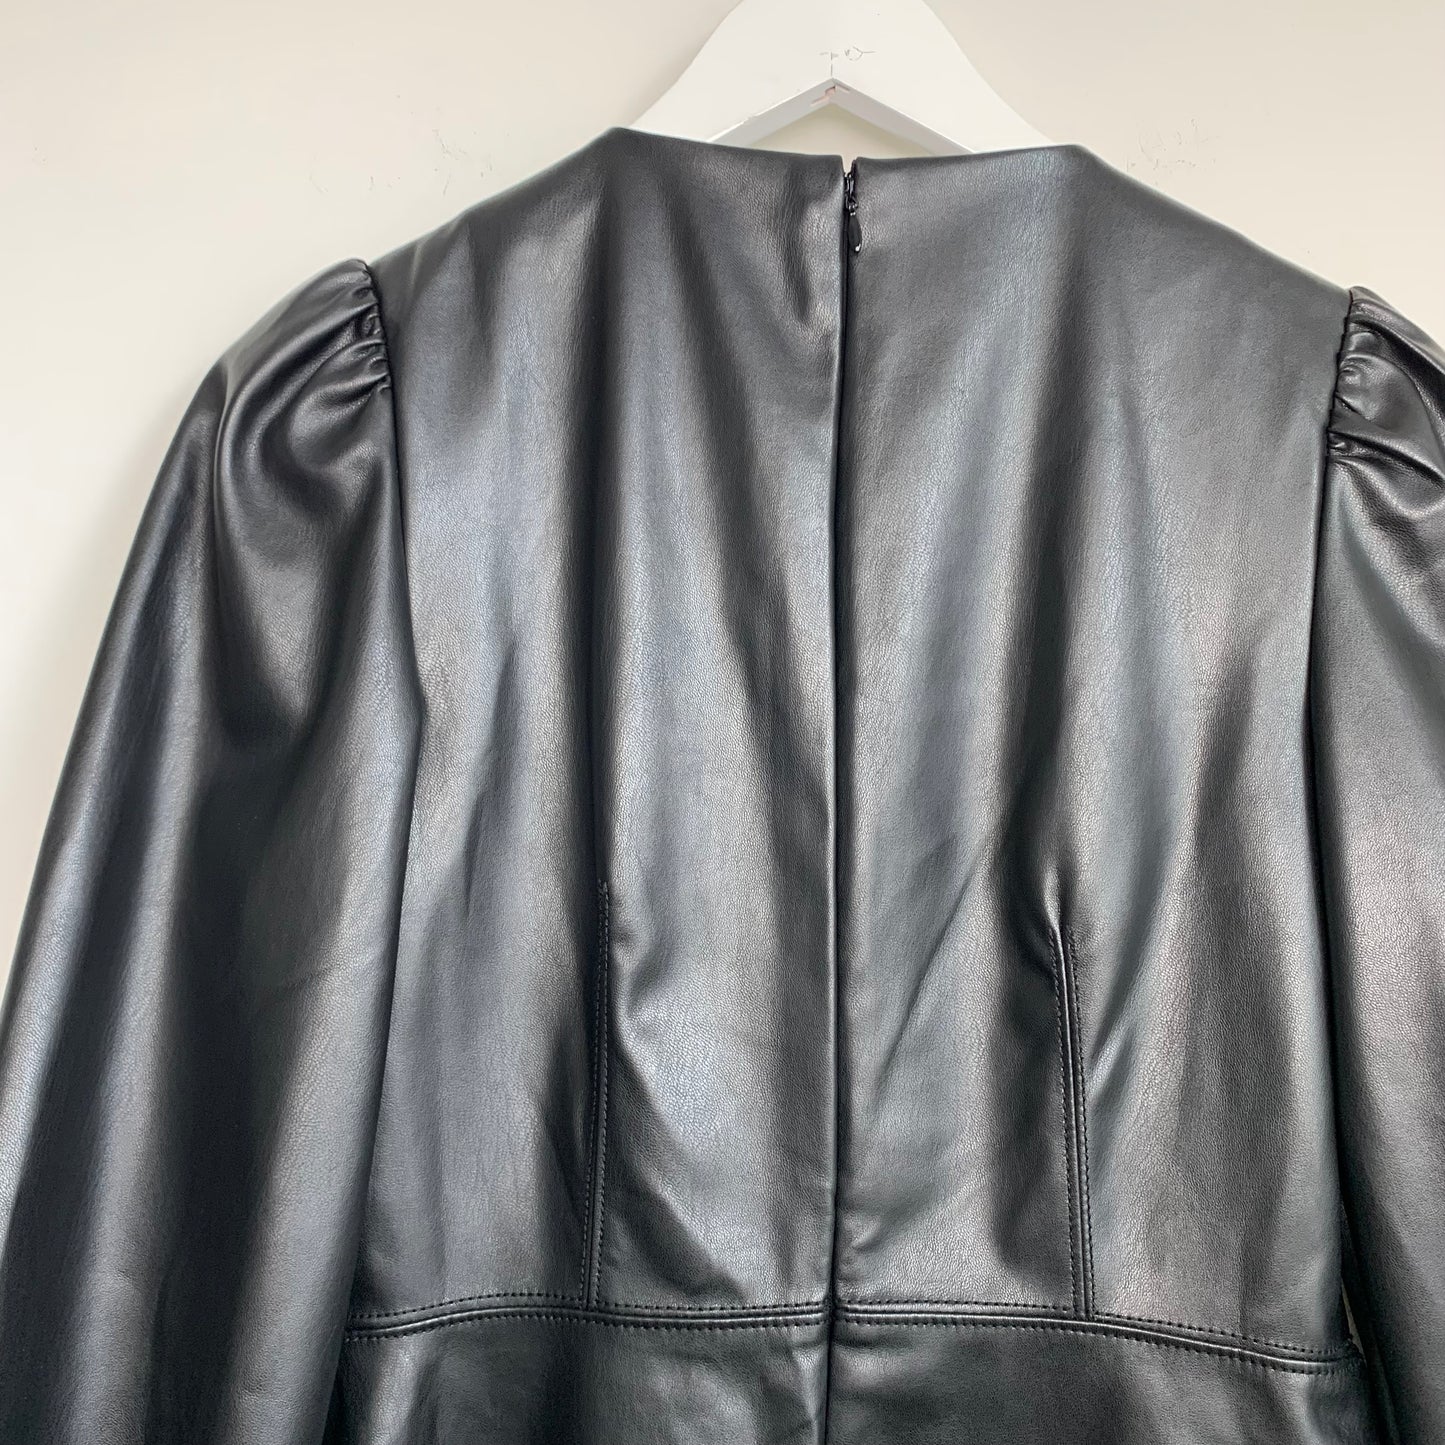 Ann Taylor Black Faux Leather Dress Size 2 Petite